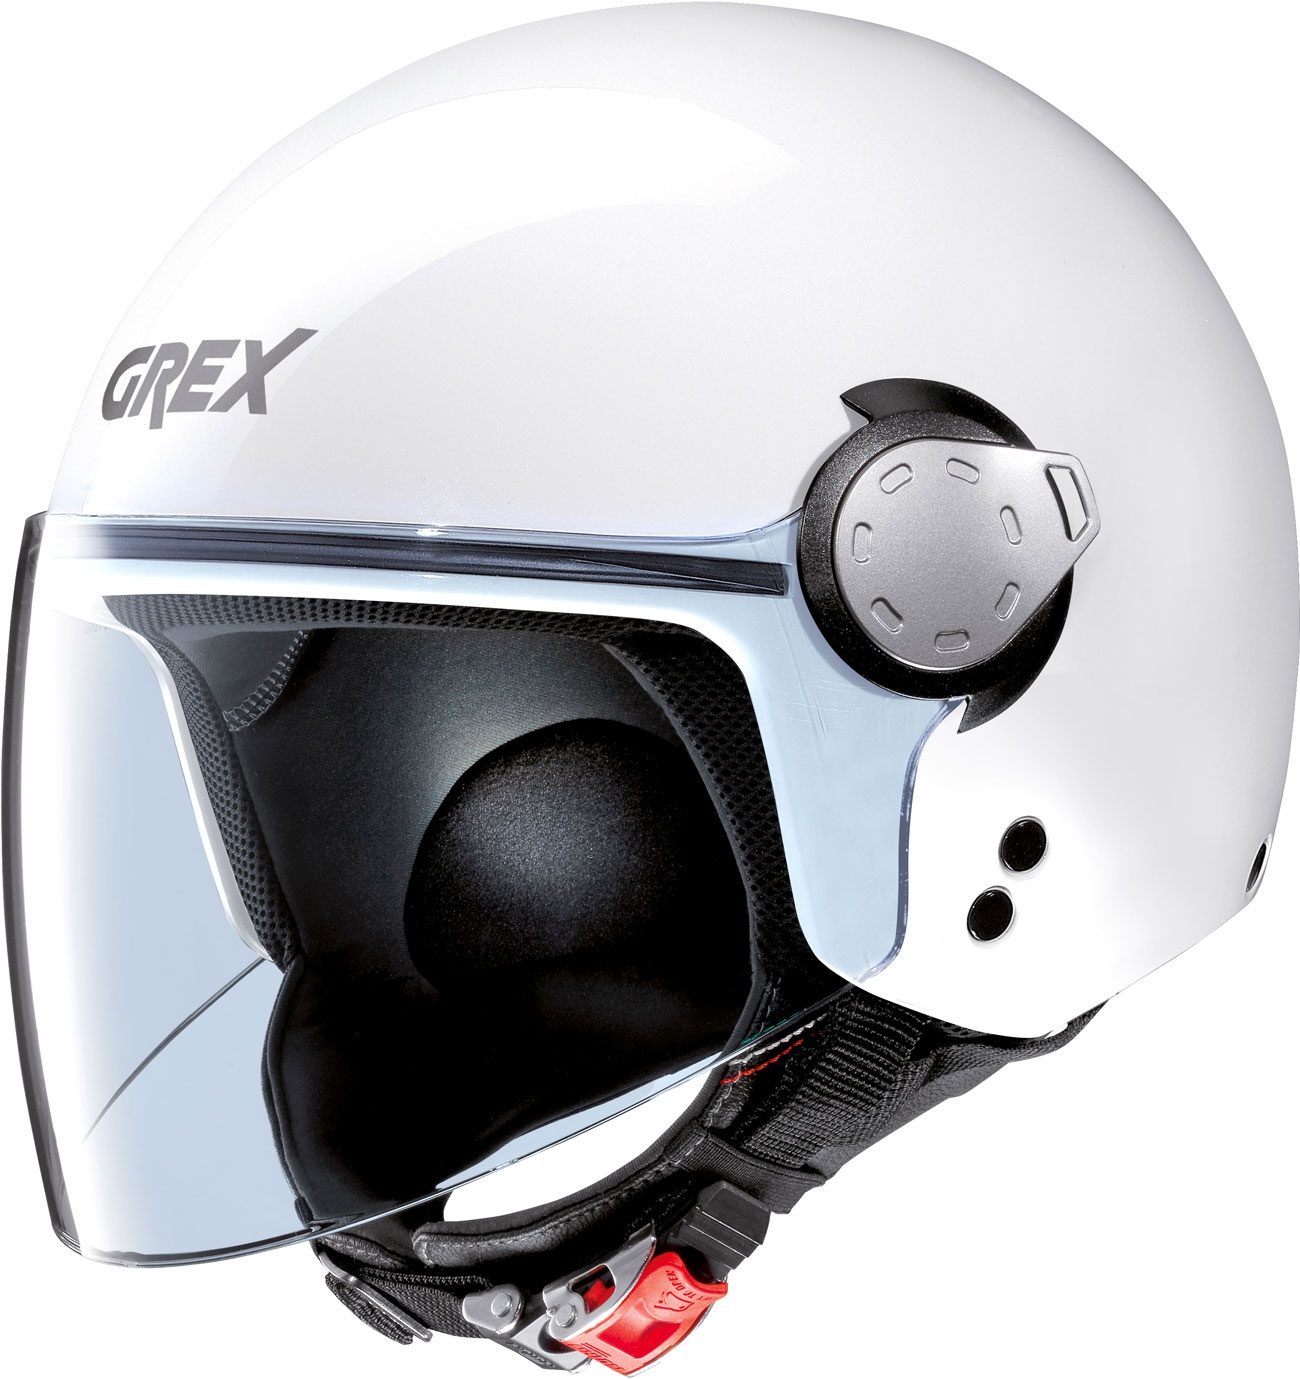 Grex G3.1 E Kinetic, Jethelm - Weiß - XL